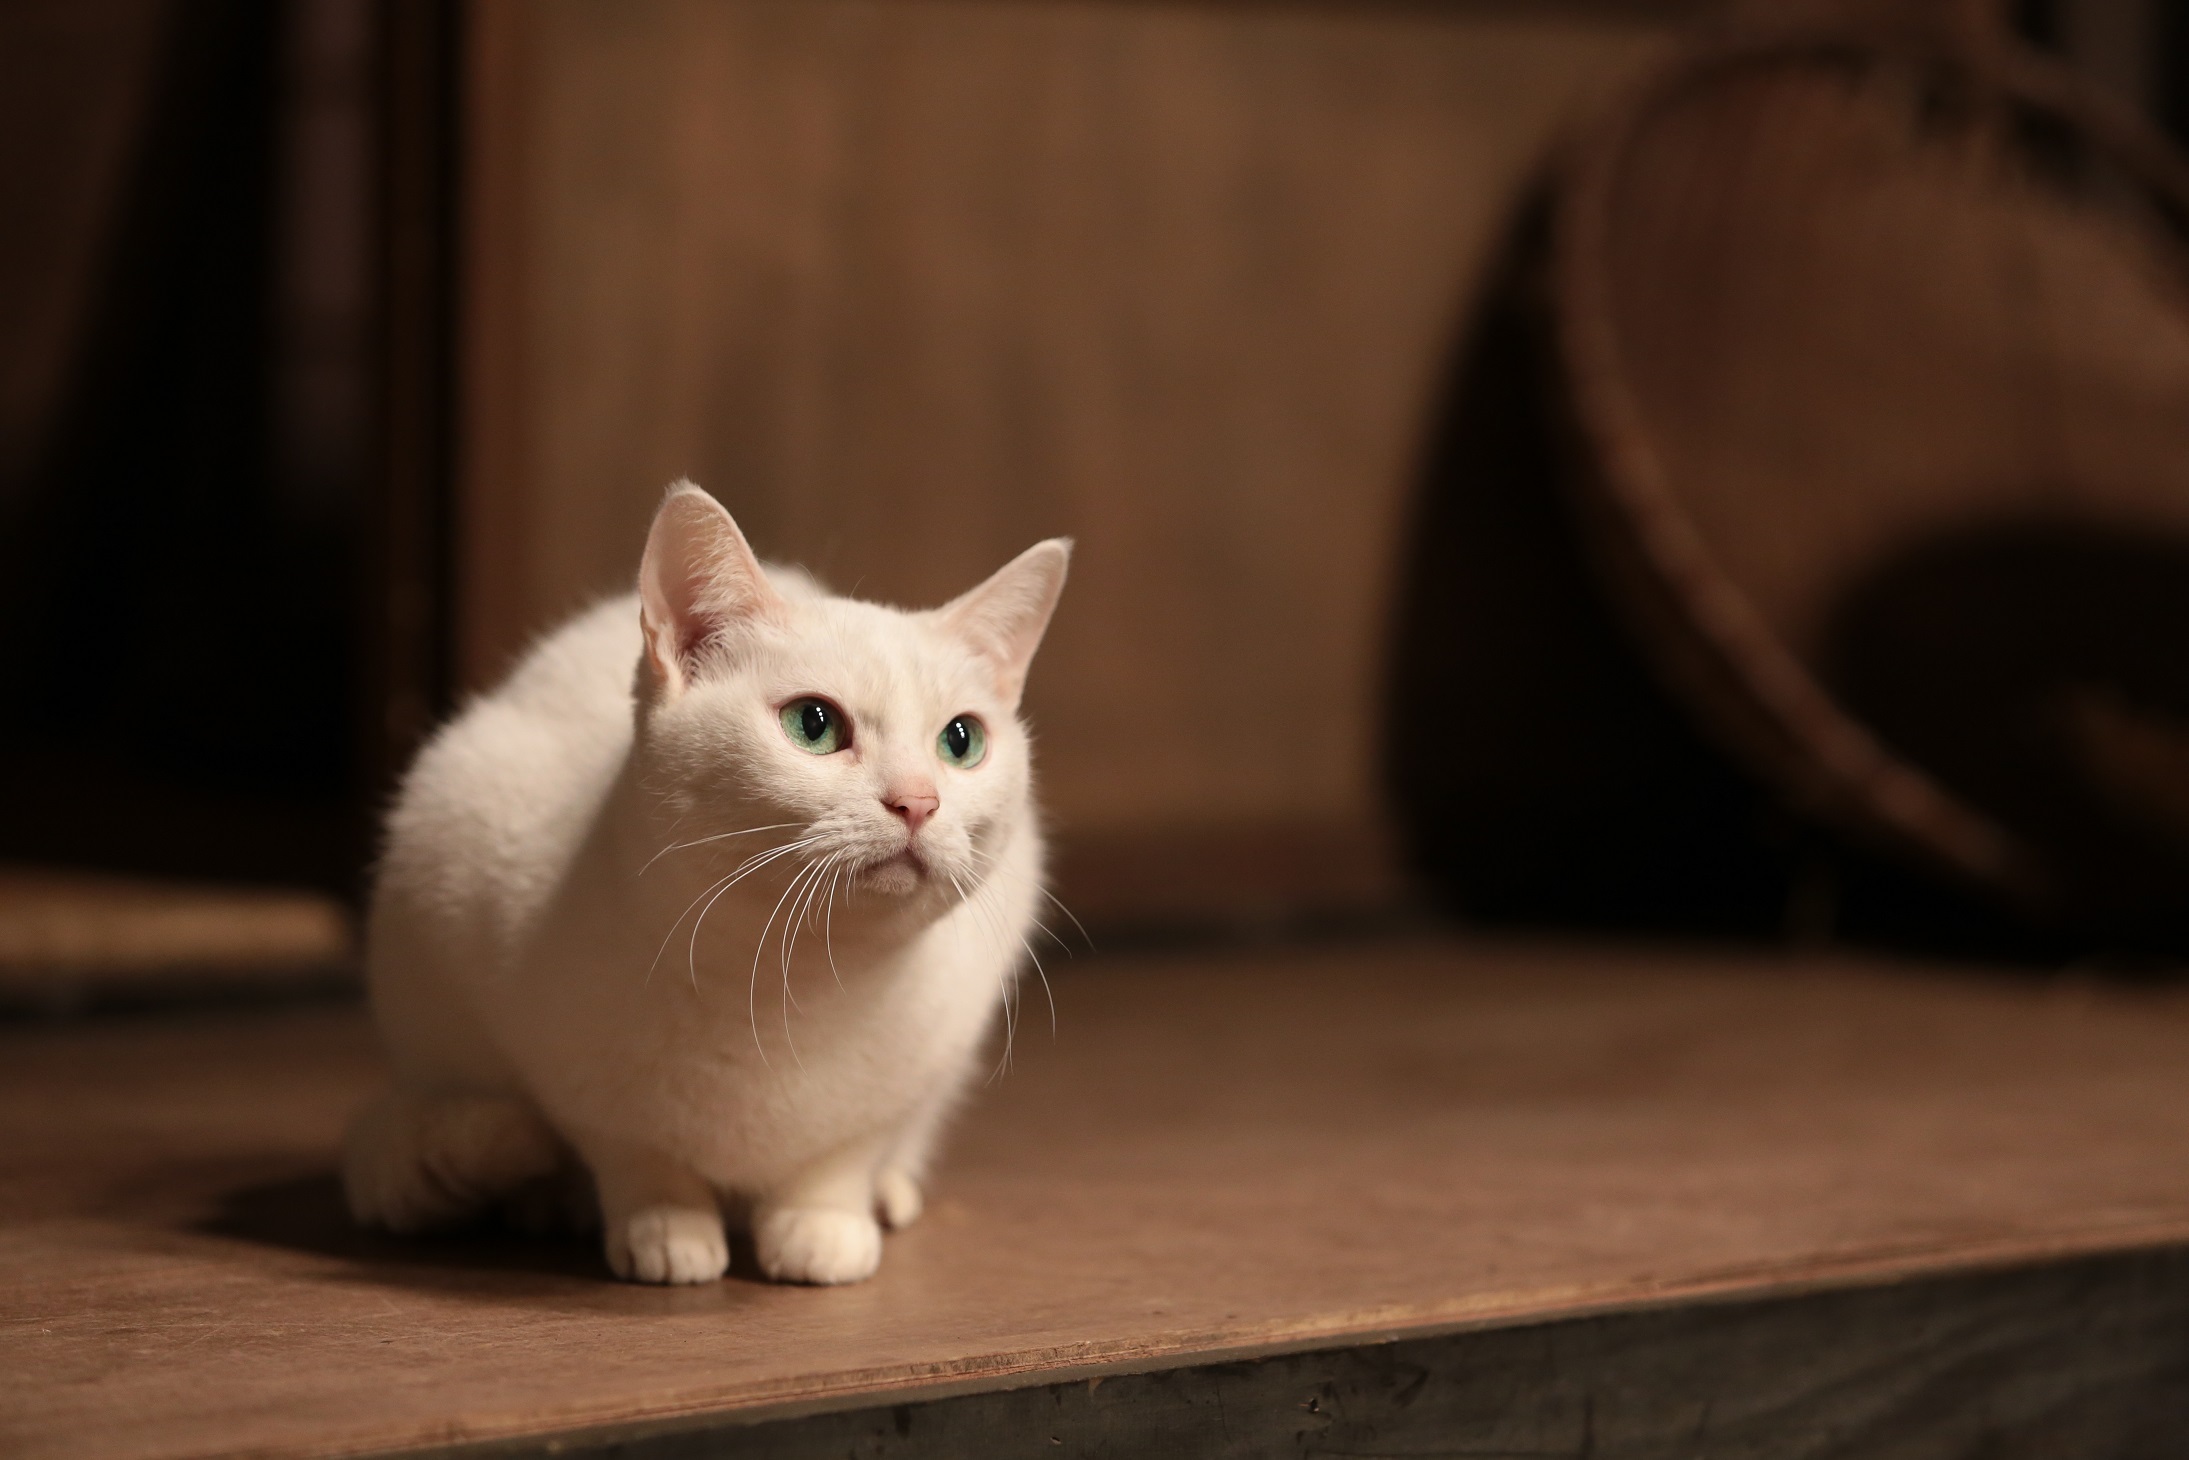 猫侍 未公開画像到着 カゴ 猫かまくら あなご の必殺ポーズに癒される 動画 写真満載 Mimot ミモット